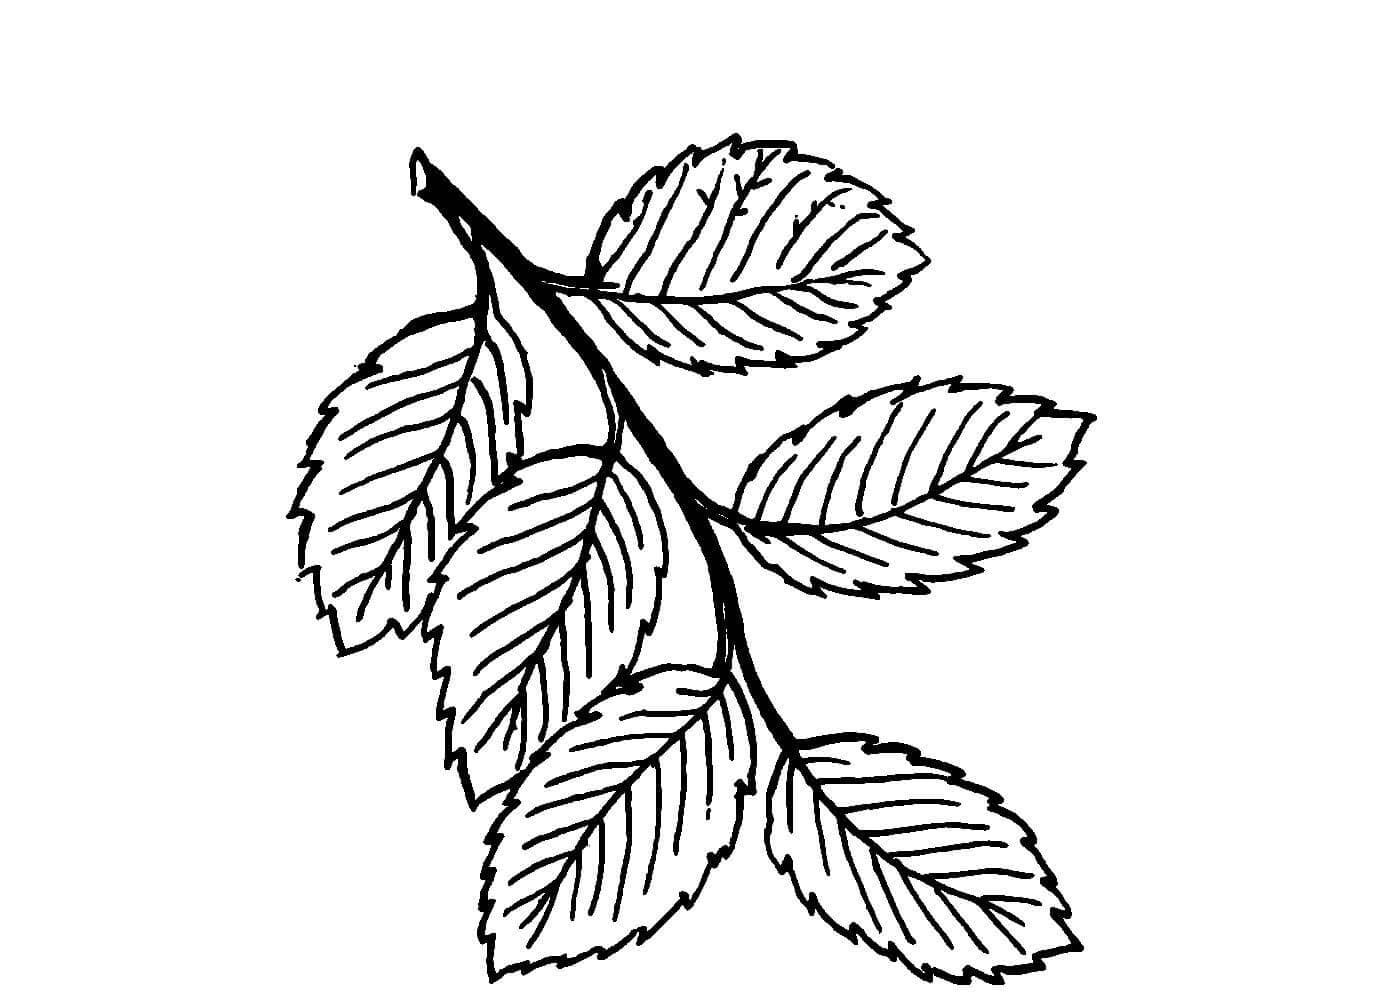 Как можно раскрасить 5 листочков. Лист вяза раскраска. Листья раскраска. Раскраска листья деревьев для детей. Лист березы раскраска для детей.